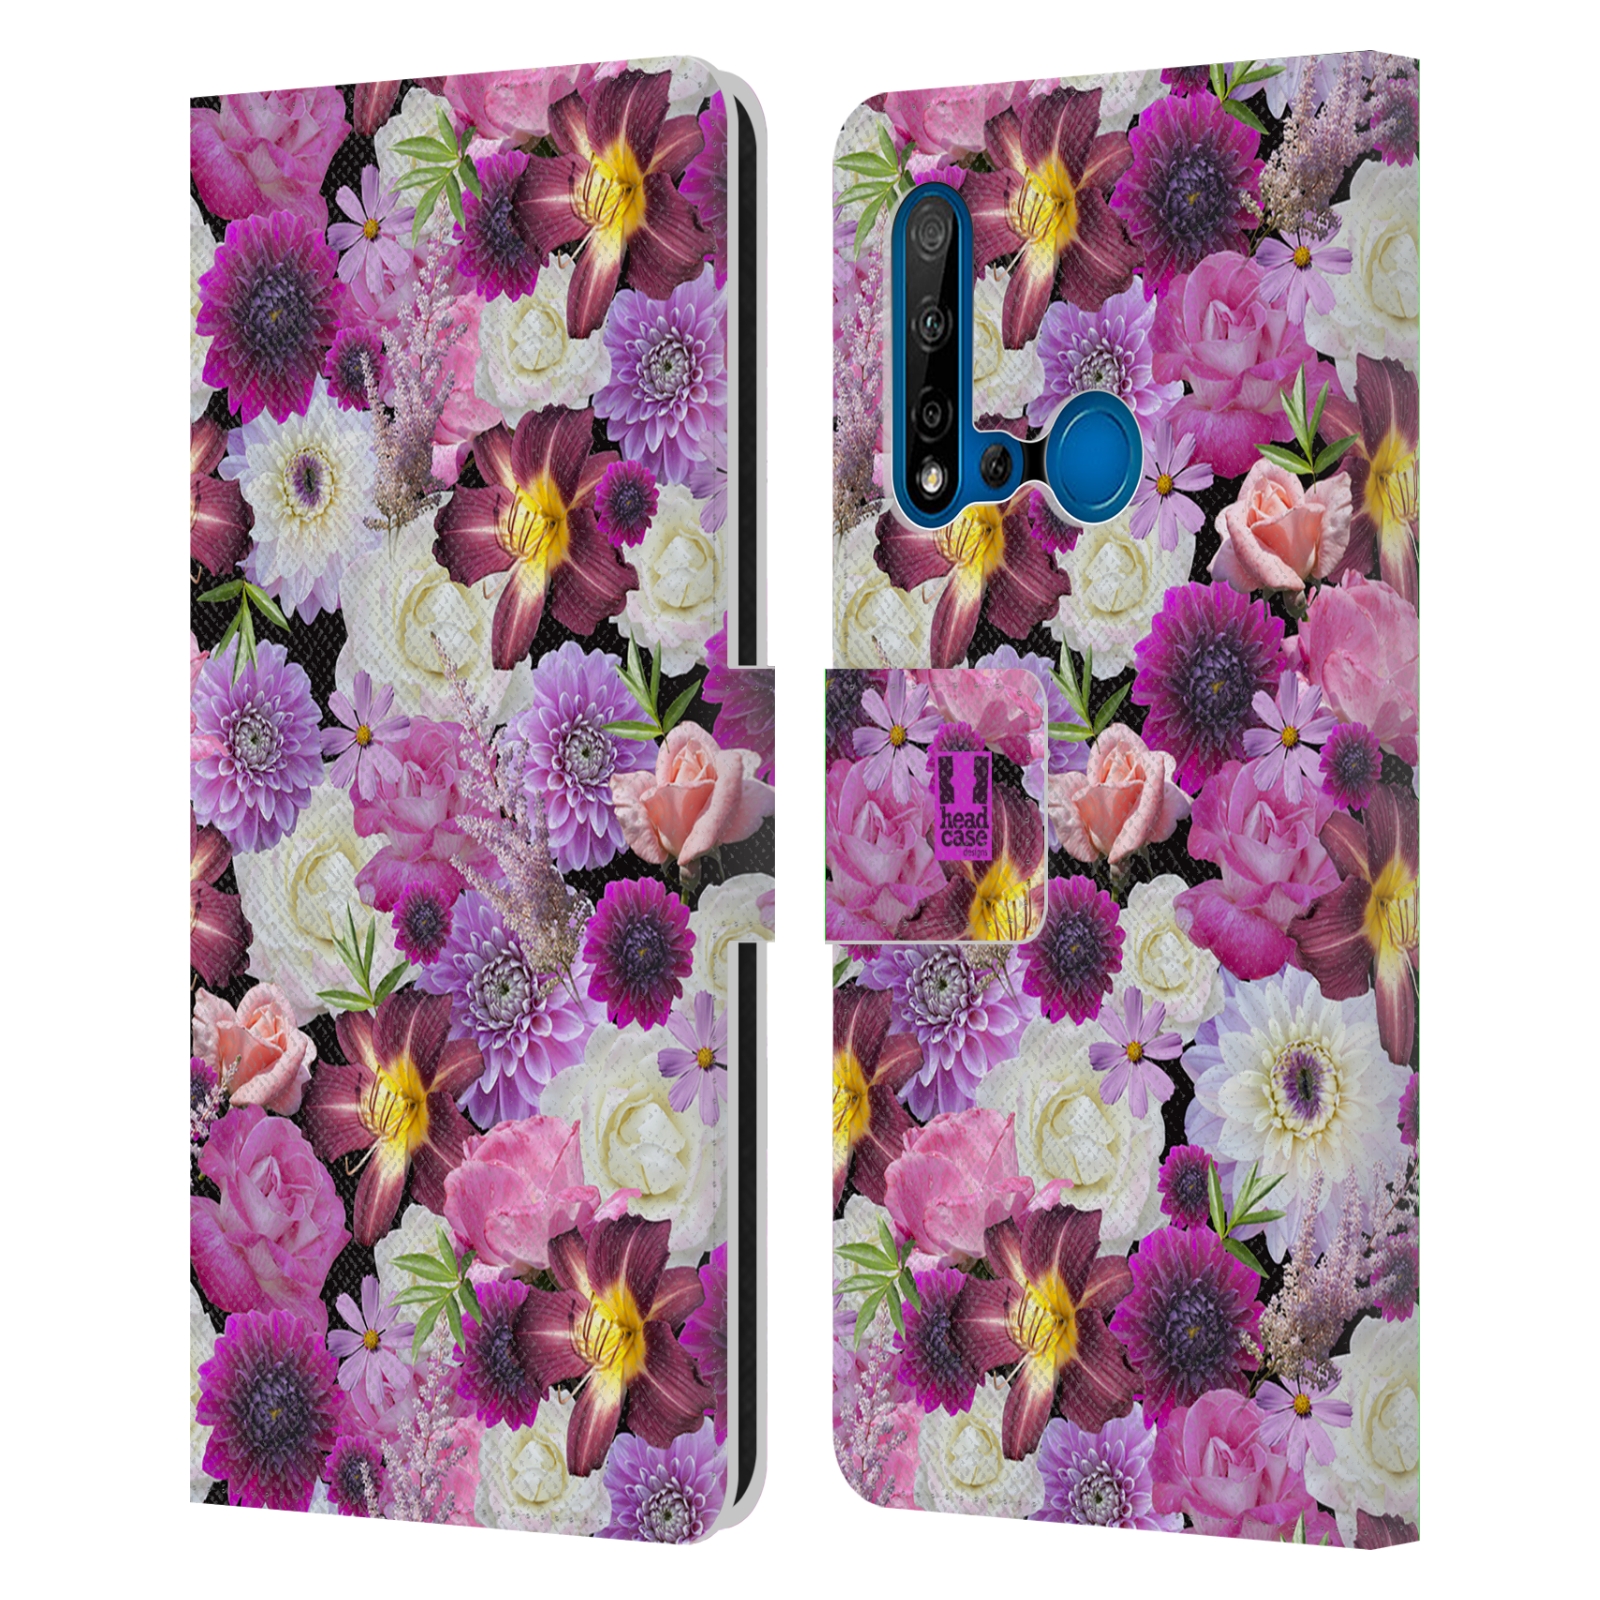 Pouzdro na mobil Huawei P20 LITE 2019 květy foto fialová a bílá